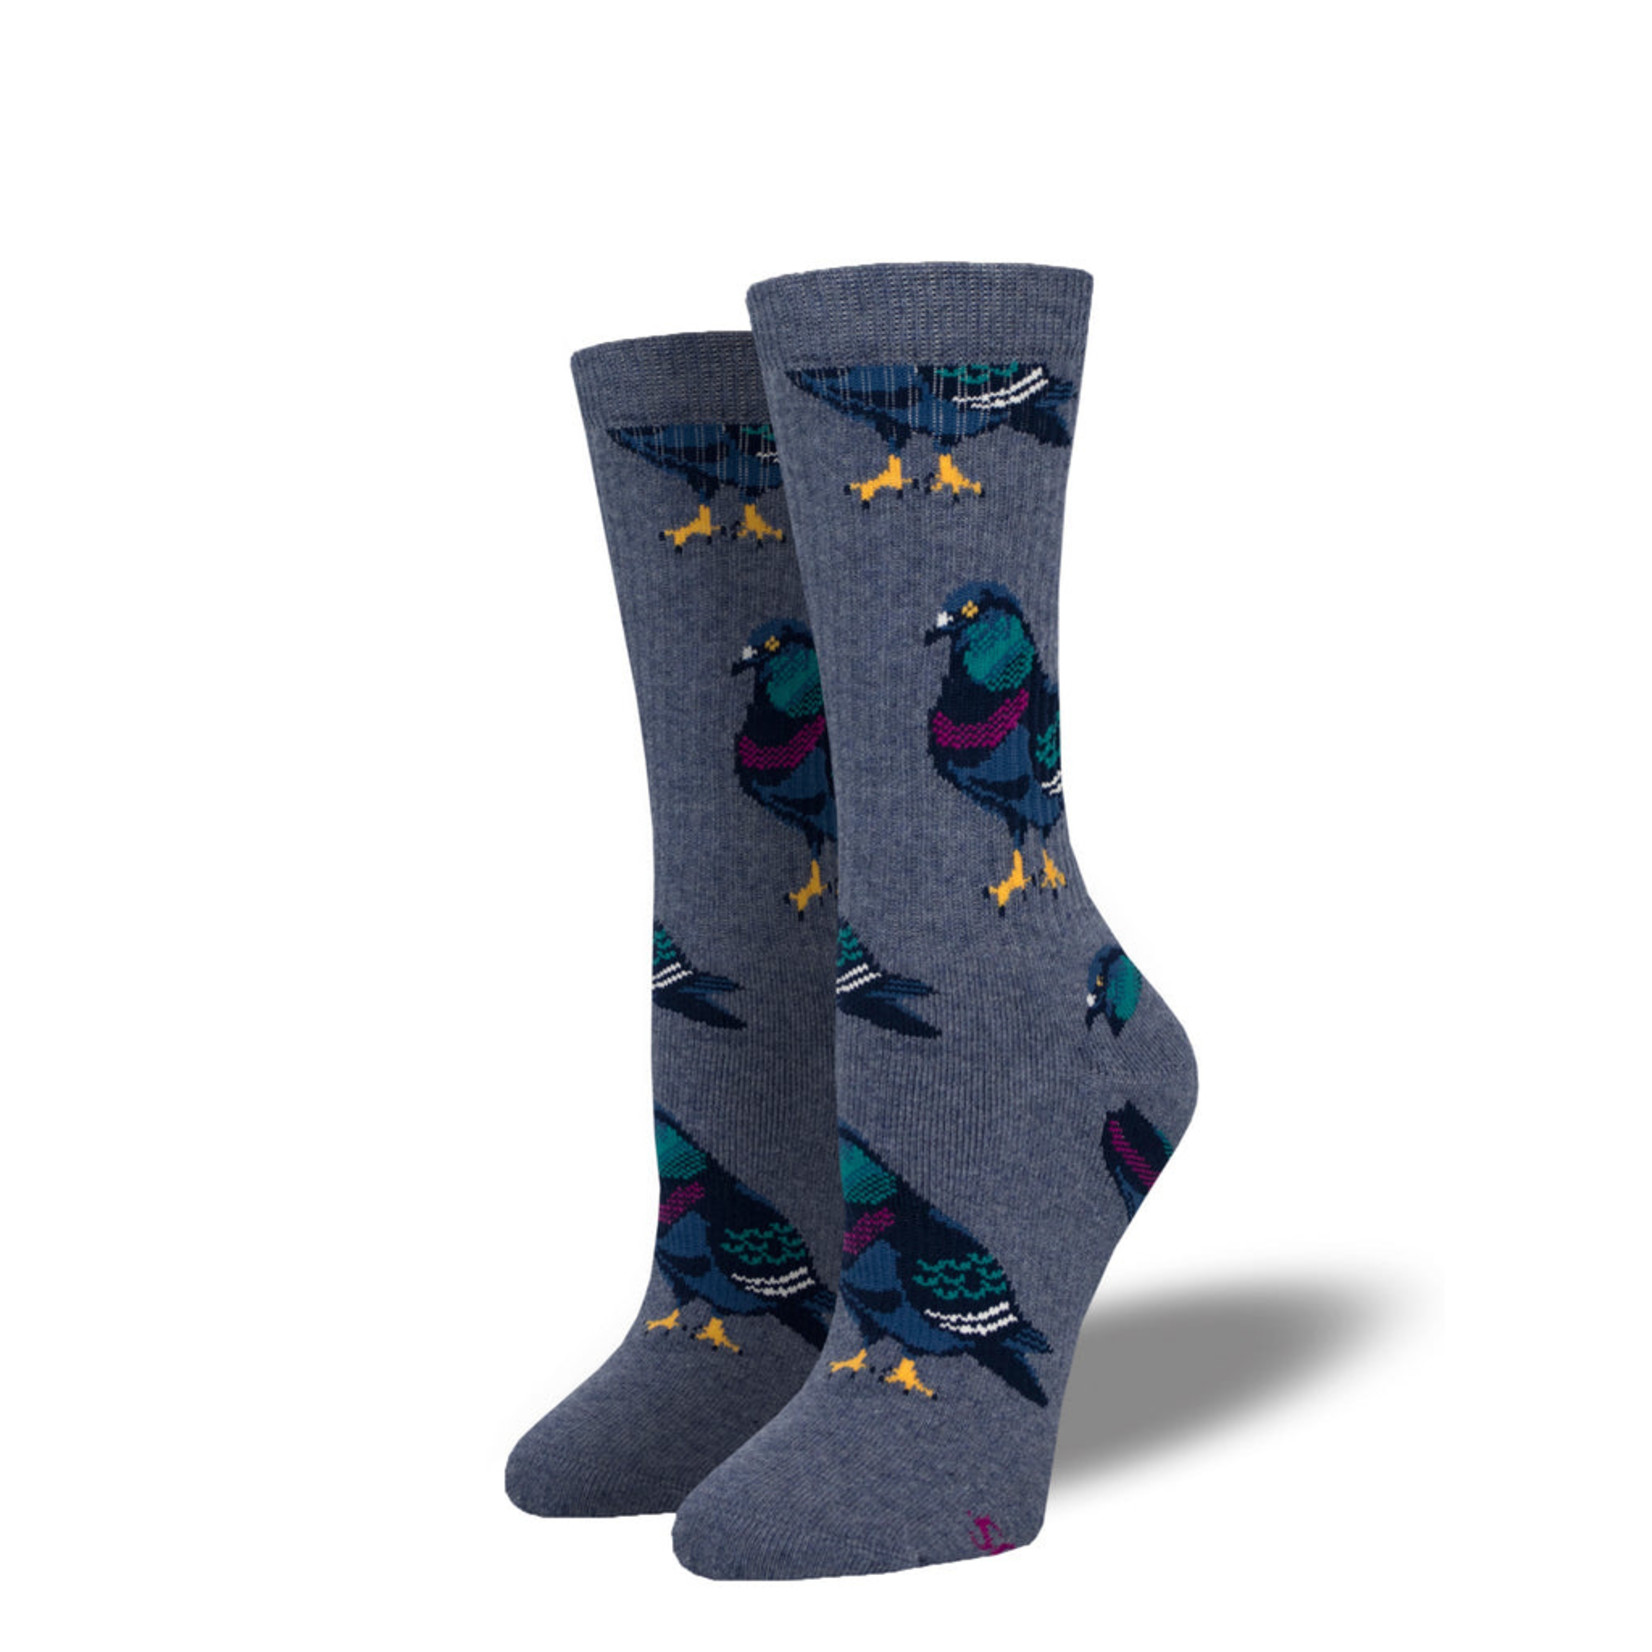 Socksmith Sly Pigeon Socks in S/M